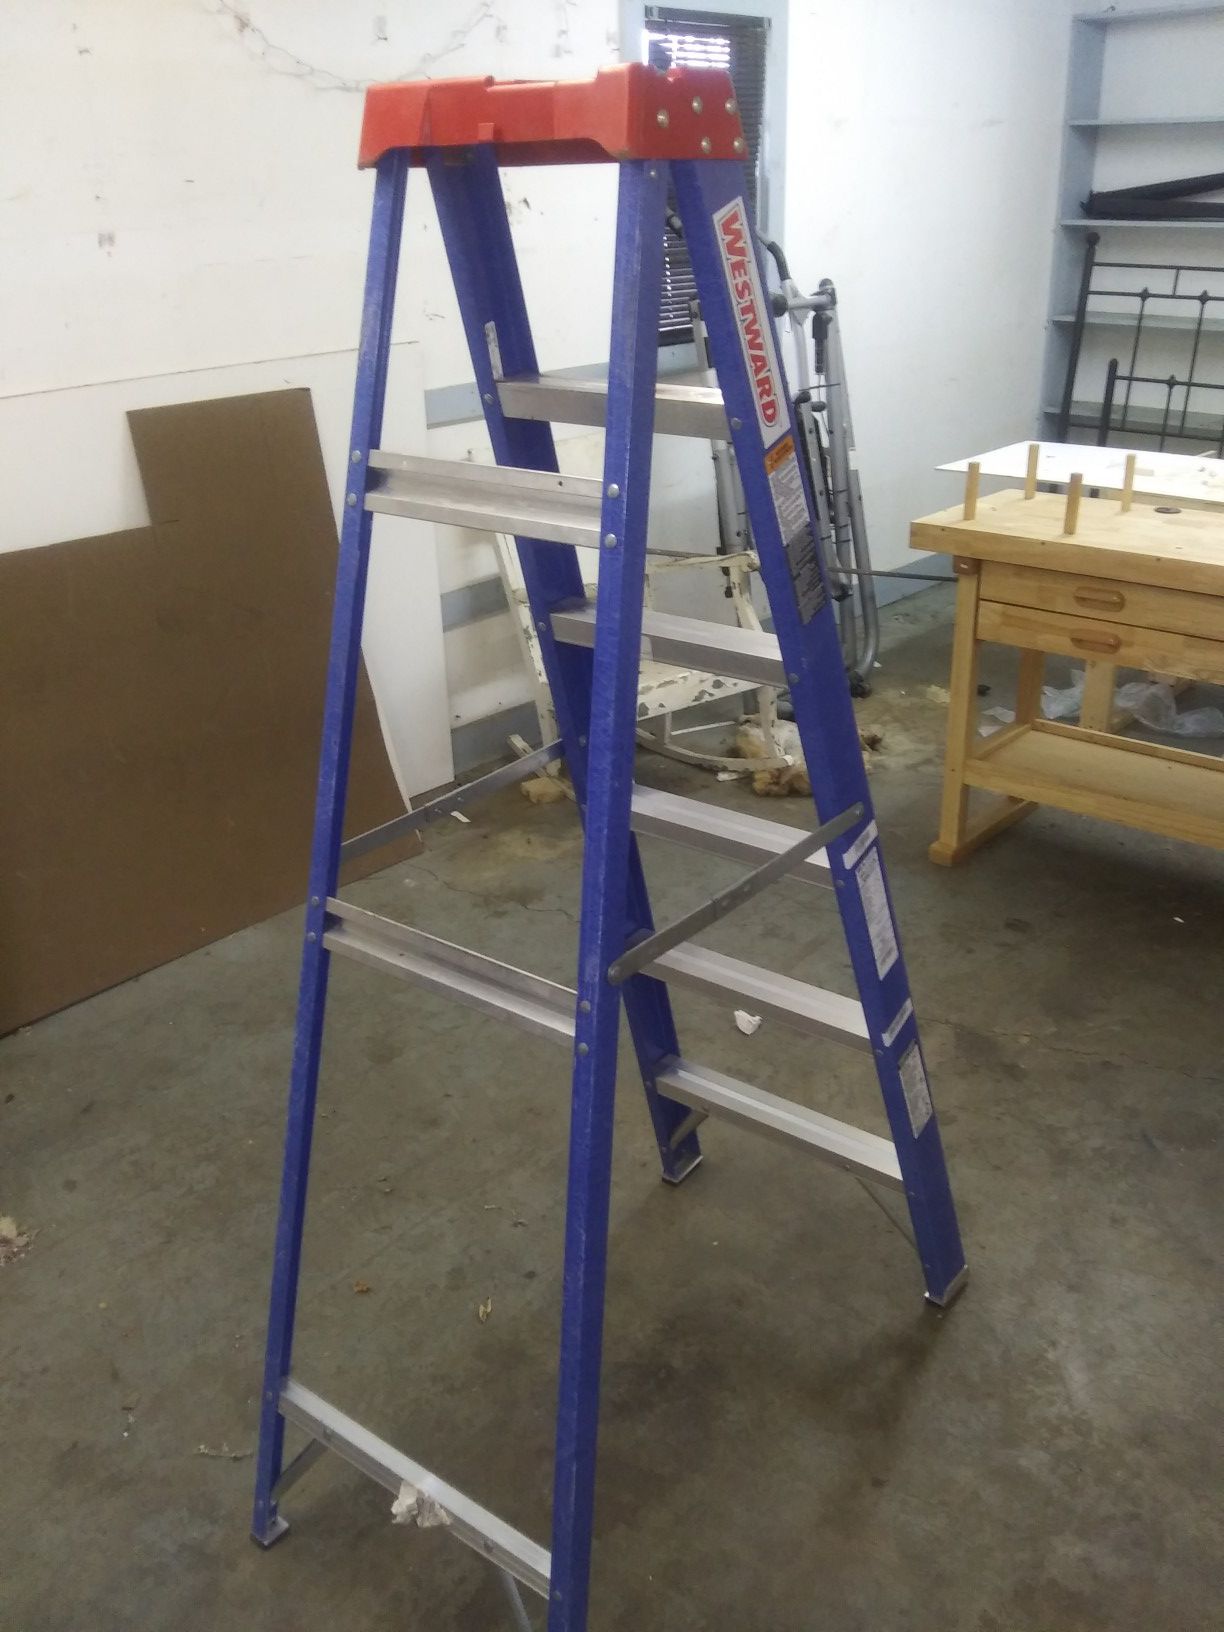 A shade under brand new 6 ft fiberglass ladder